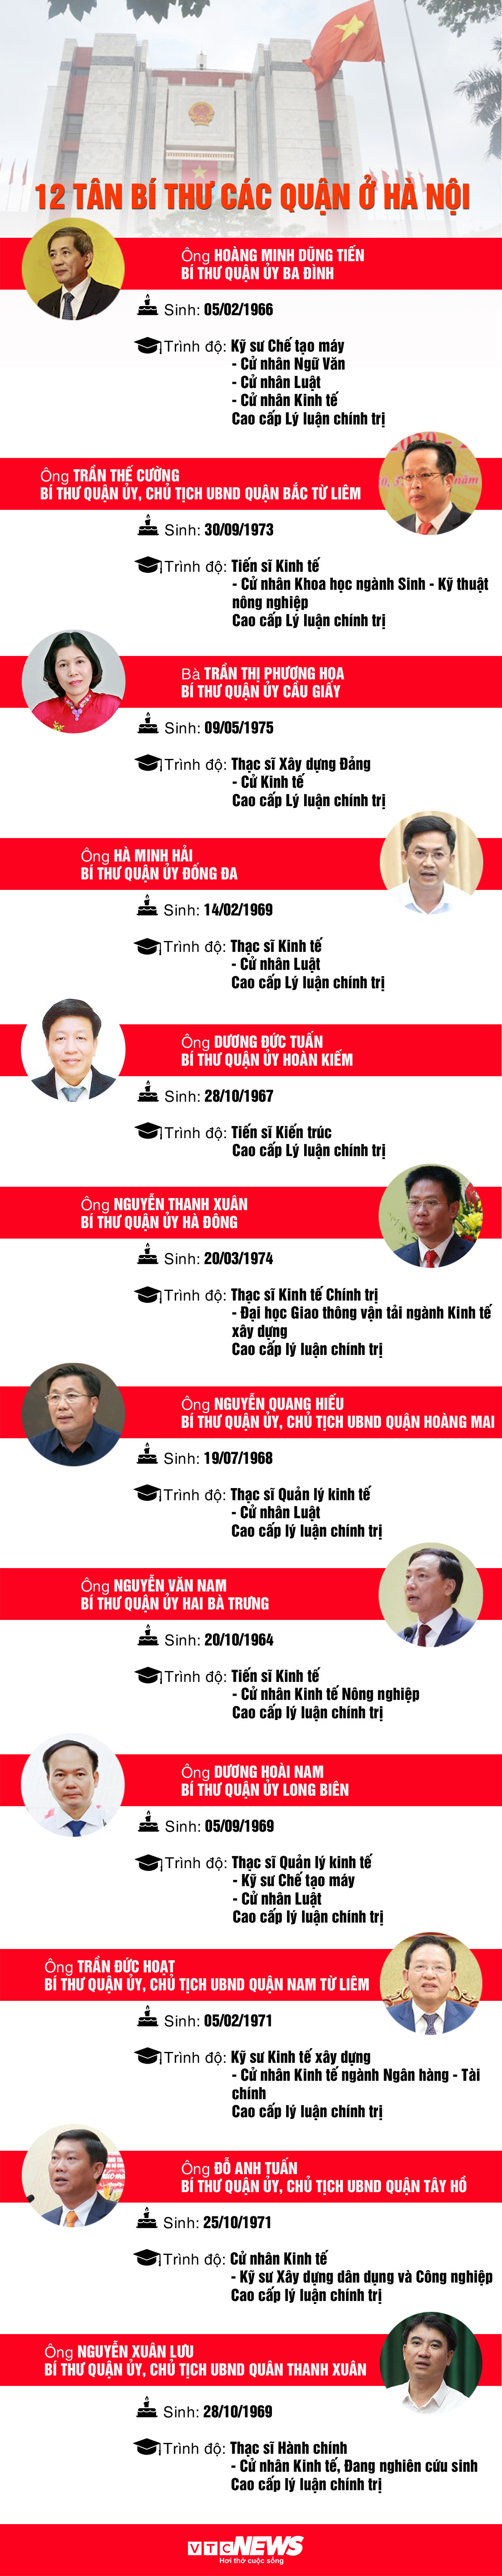 Infographic: Chân dung 12 tân Bí thư quận ủy ở Hà Nội - 1